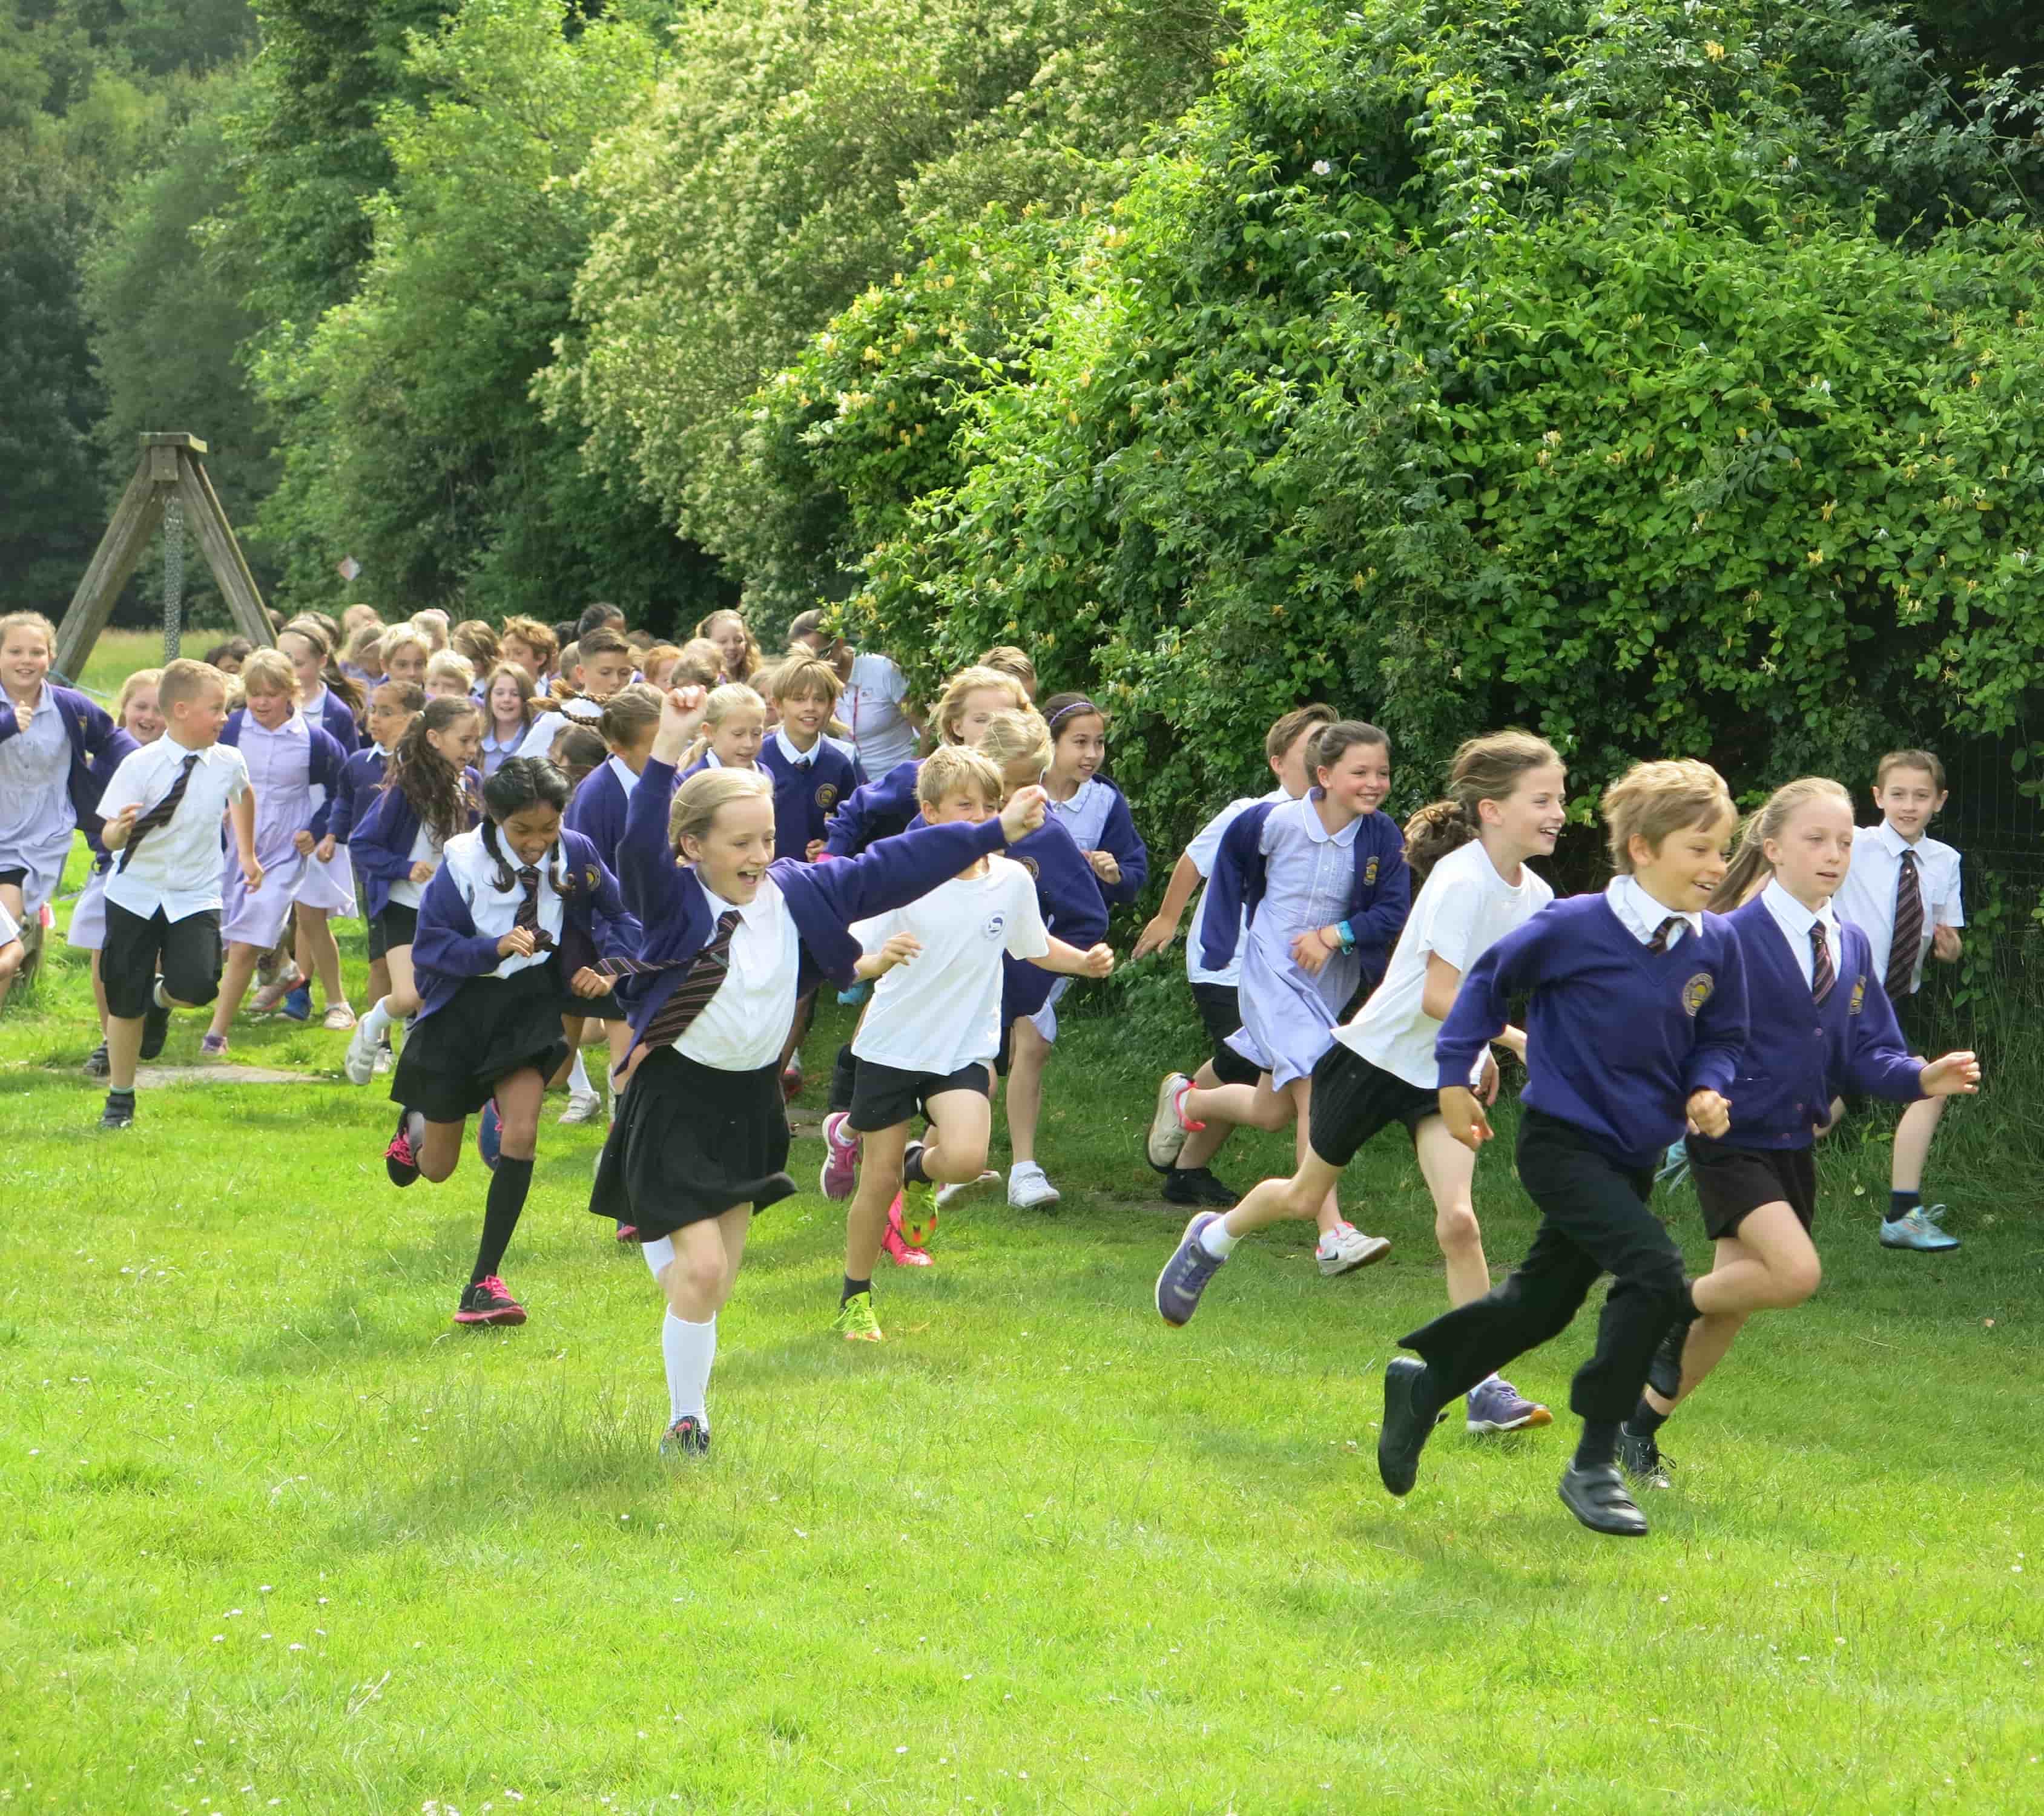 Children enjoying running around school field